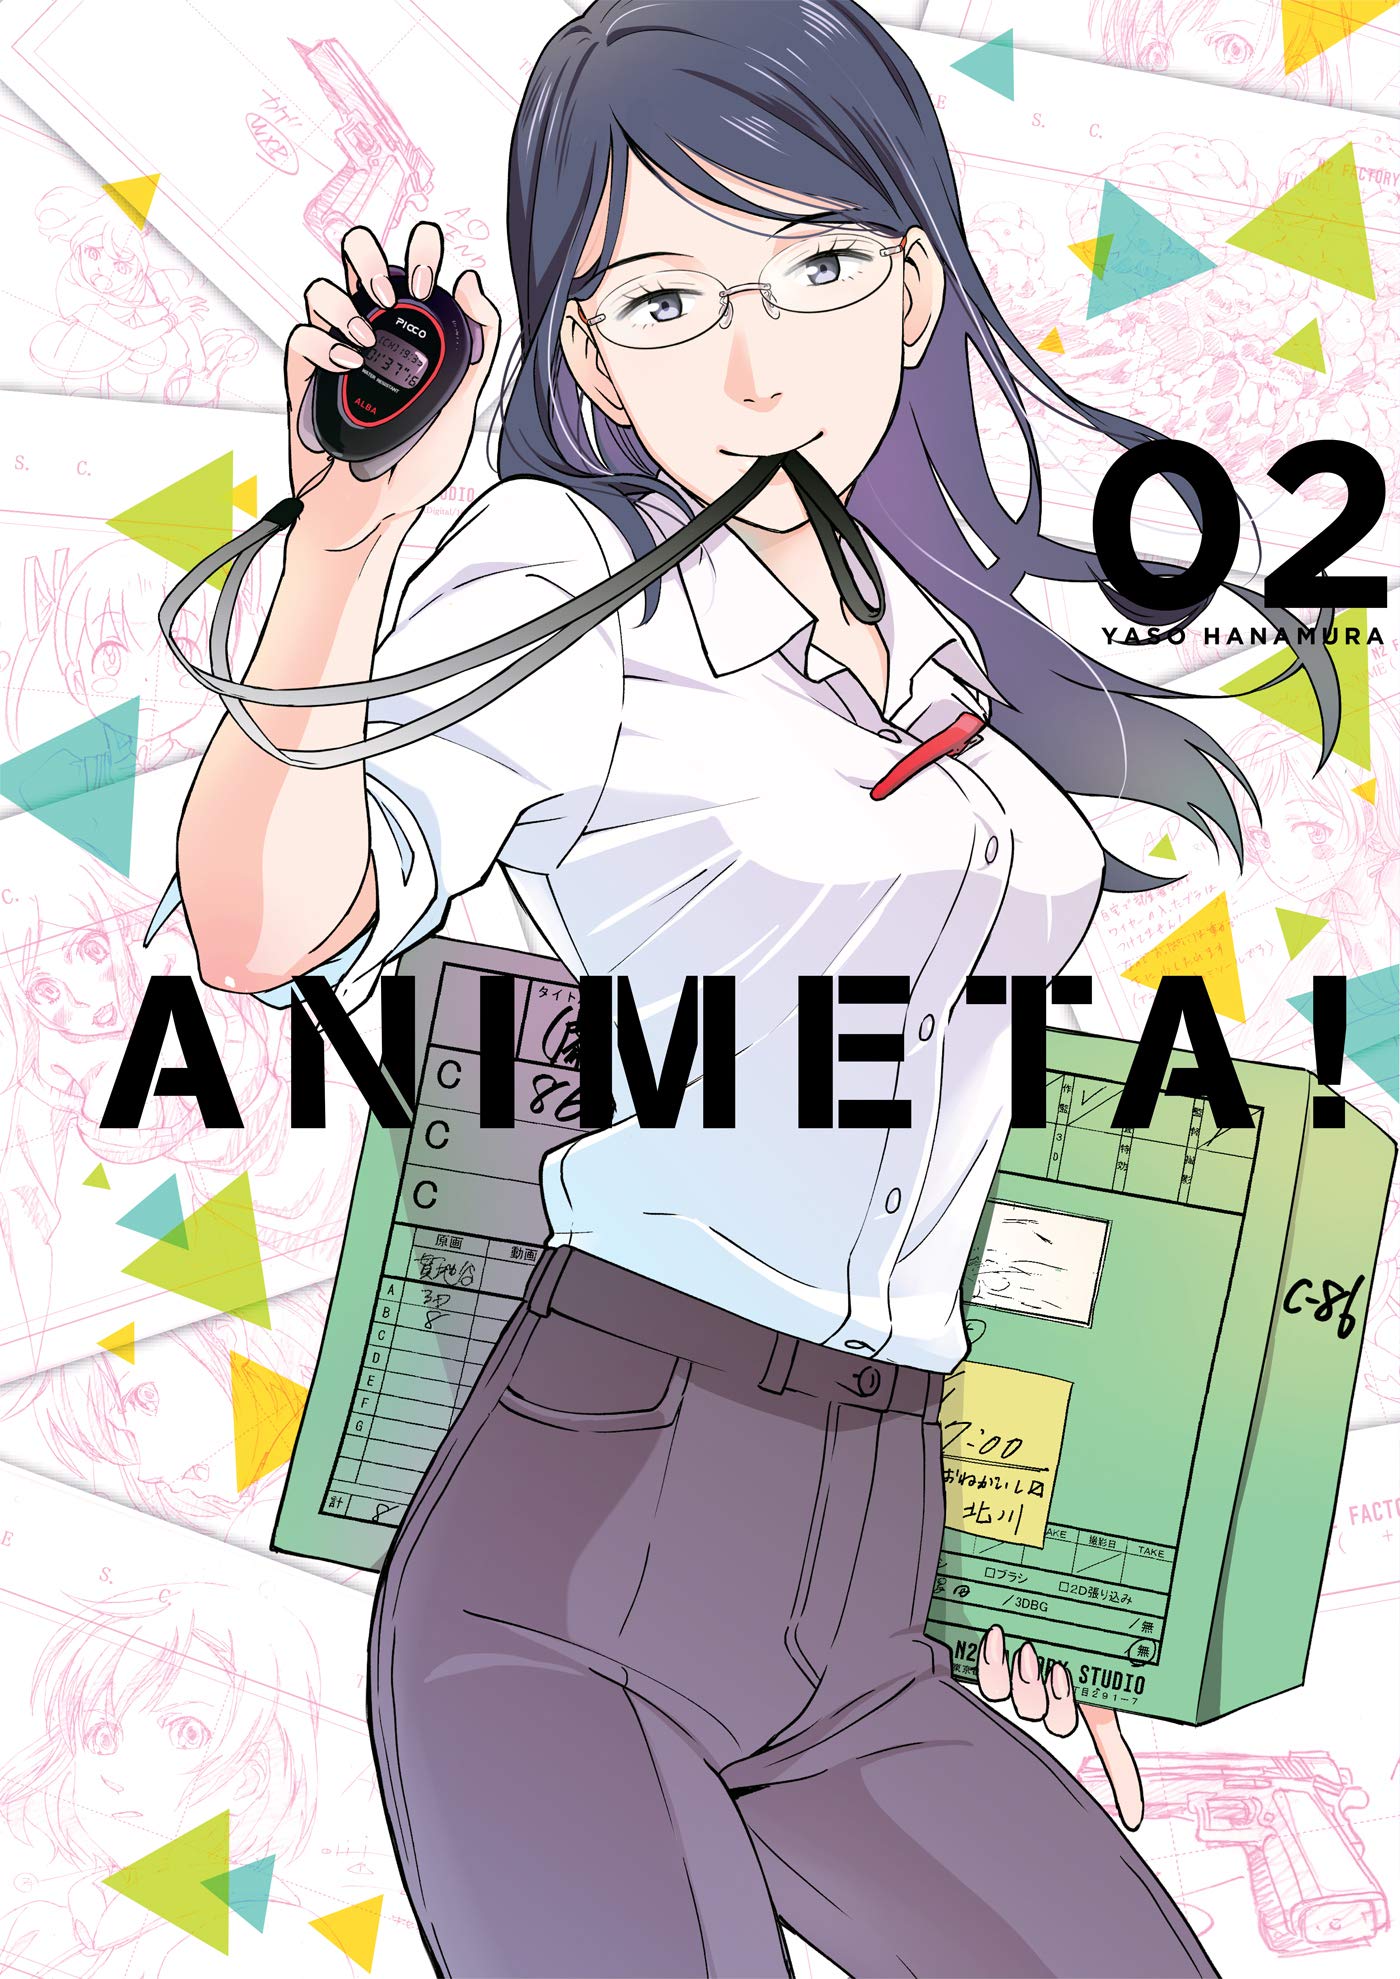 Animeta! - Volume 2